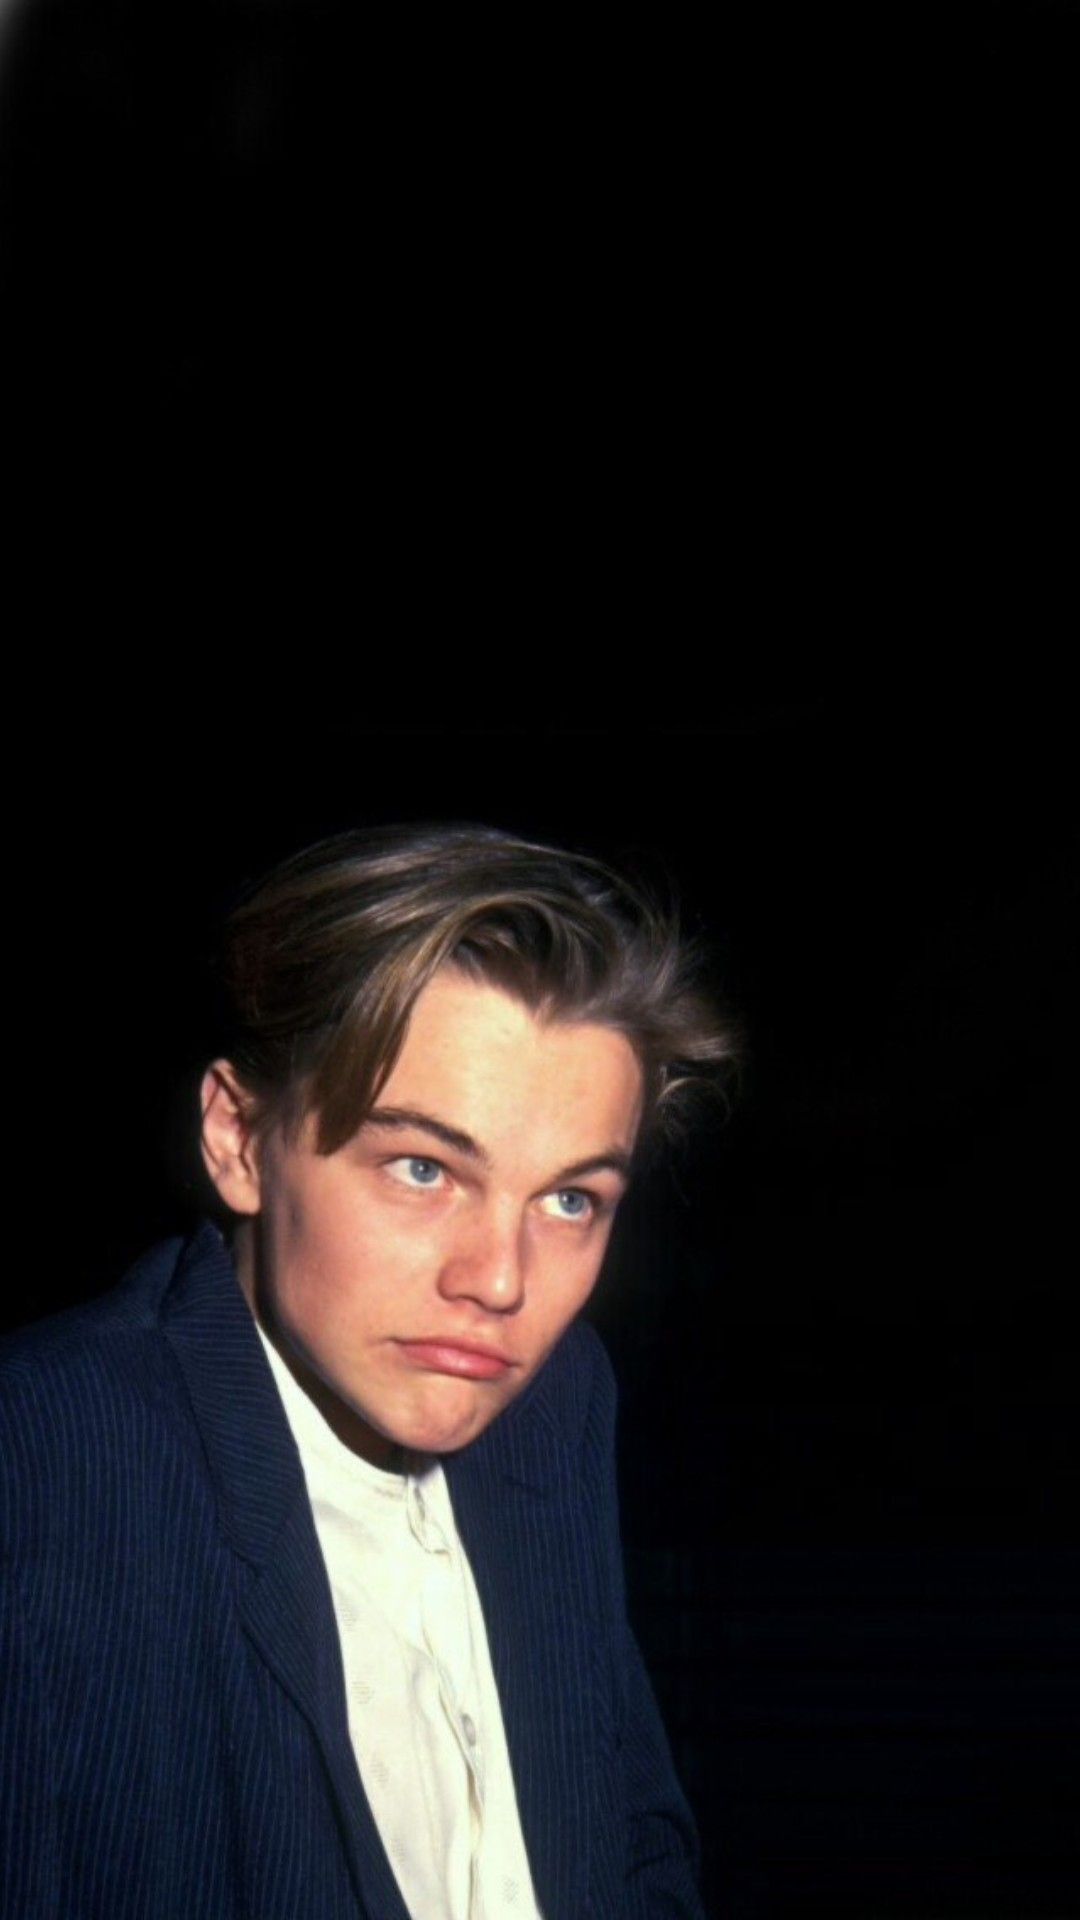 Young Leonardo DiCaprio Wallpaper Free Young Leonardo